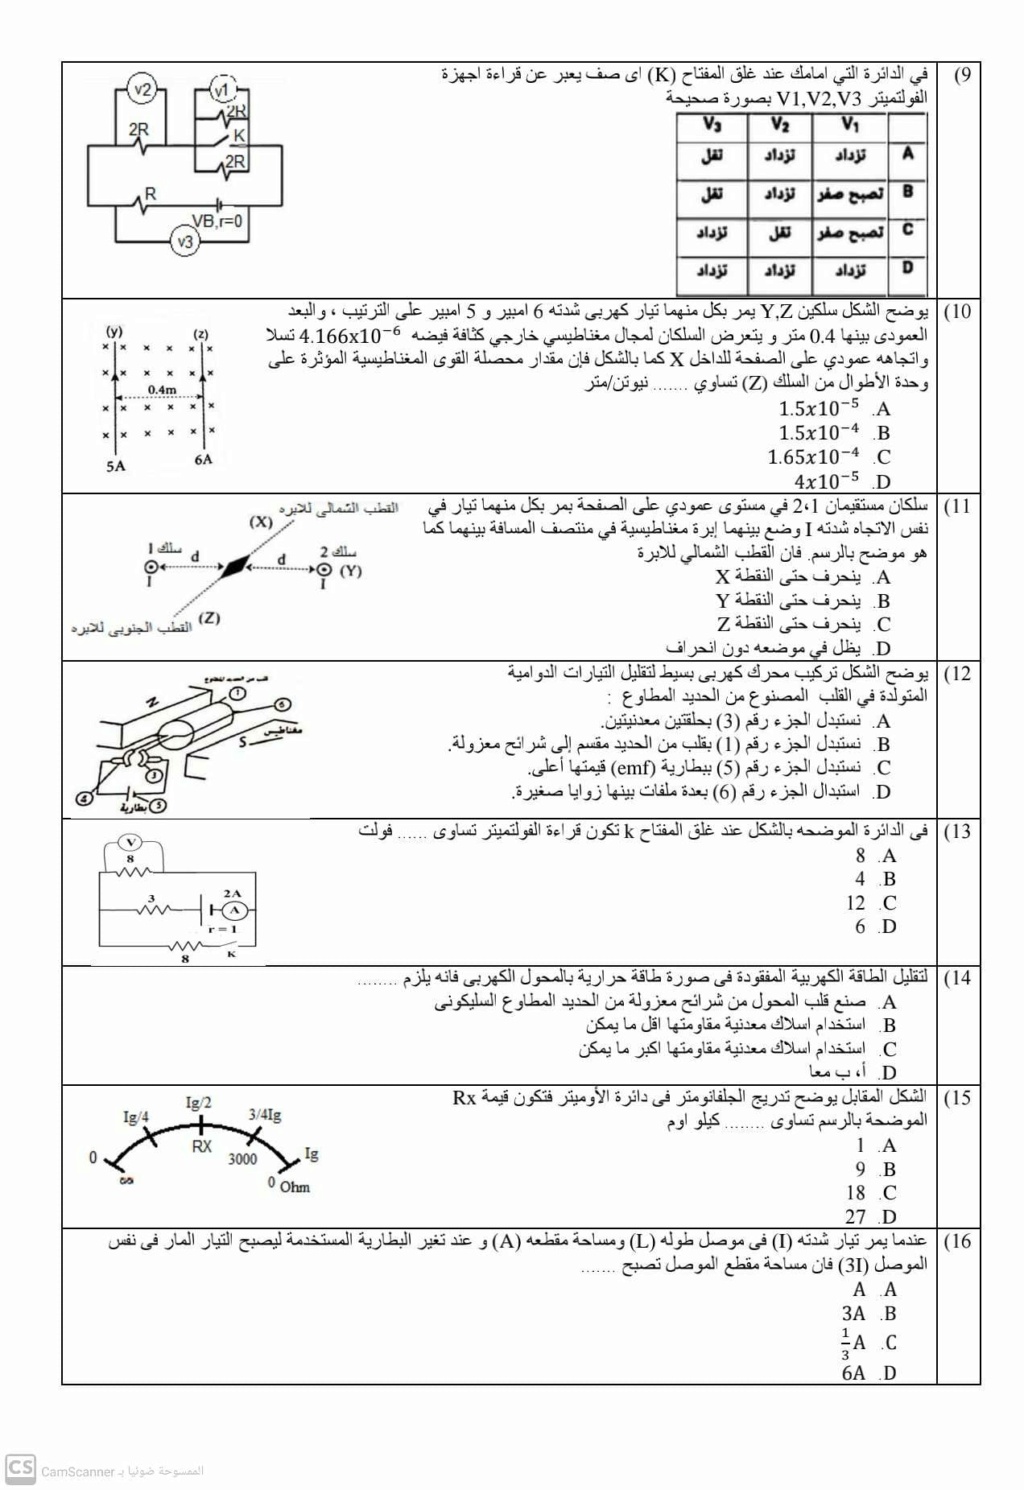 امتحان فيزياء كهربية ثالثة ثانوي 2023 مستر أحمد فاروق 2496